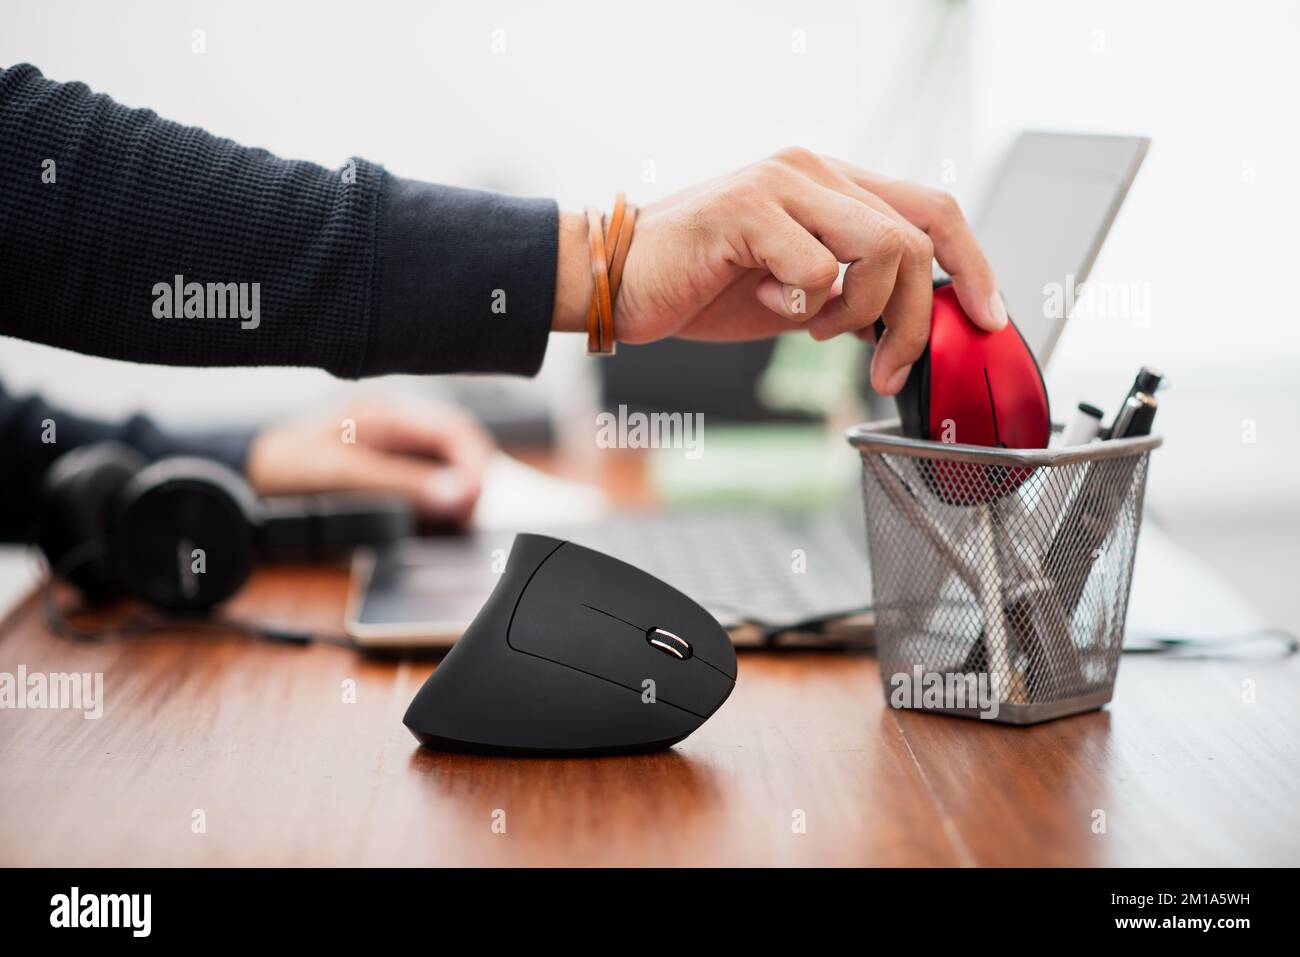 L'uomo che utilizza un mouse ottico verticale nero per computer dal design ergonomico e lascia il normale mouse per computer nel cestino. Foto Stock